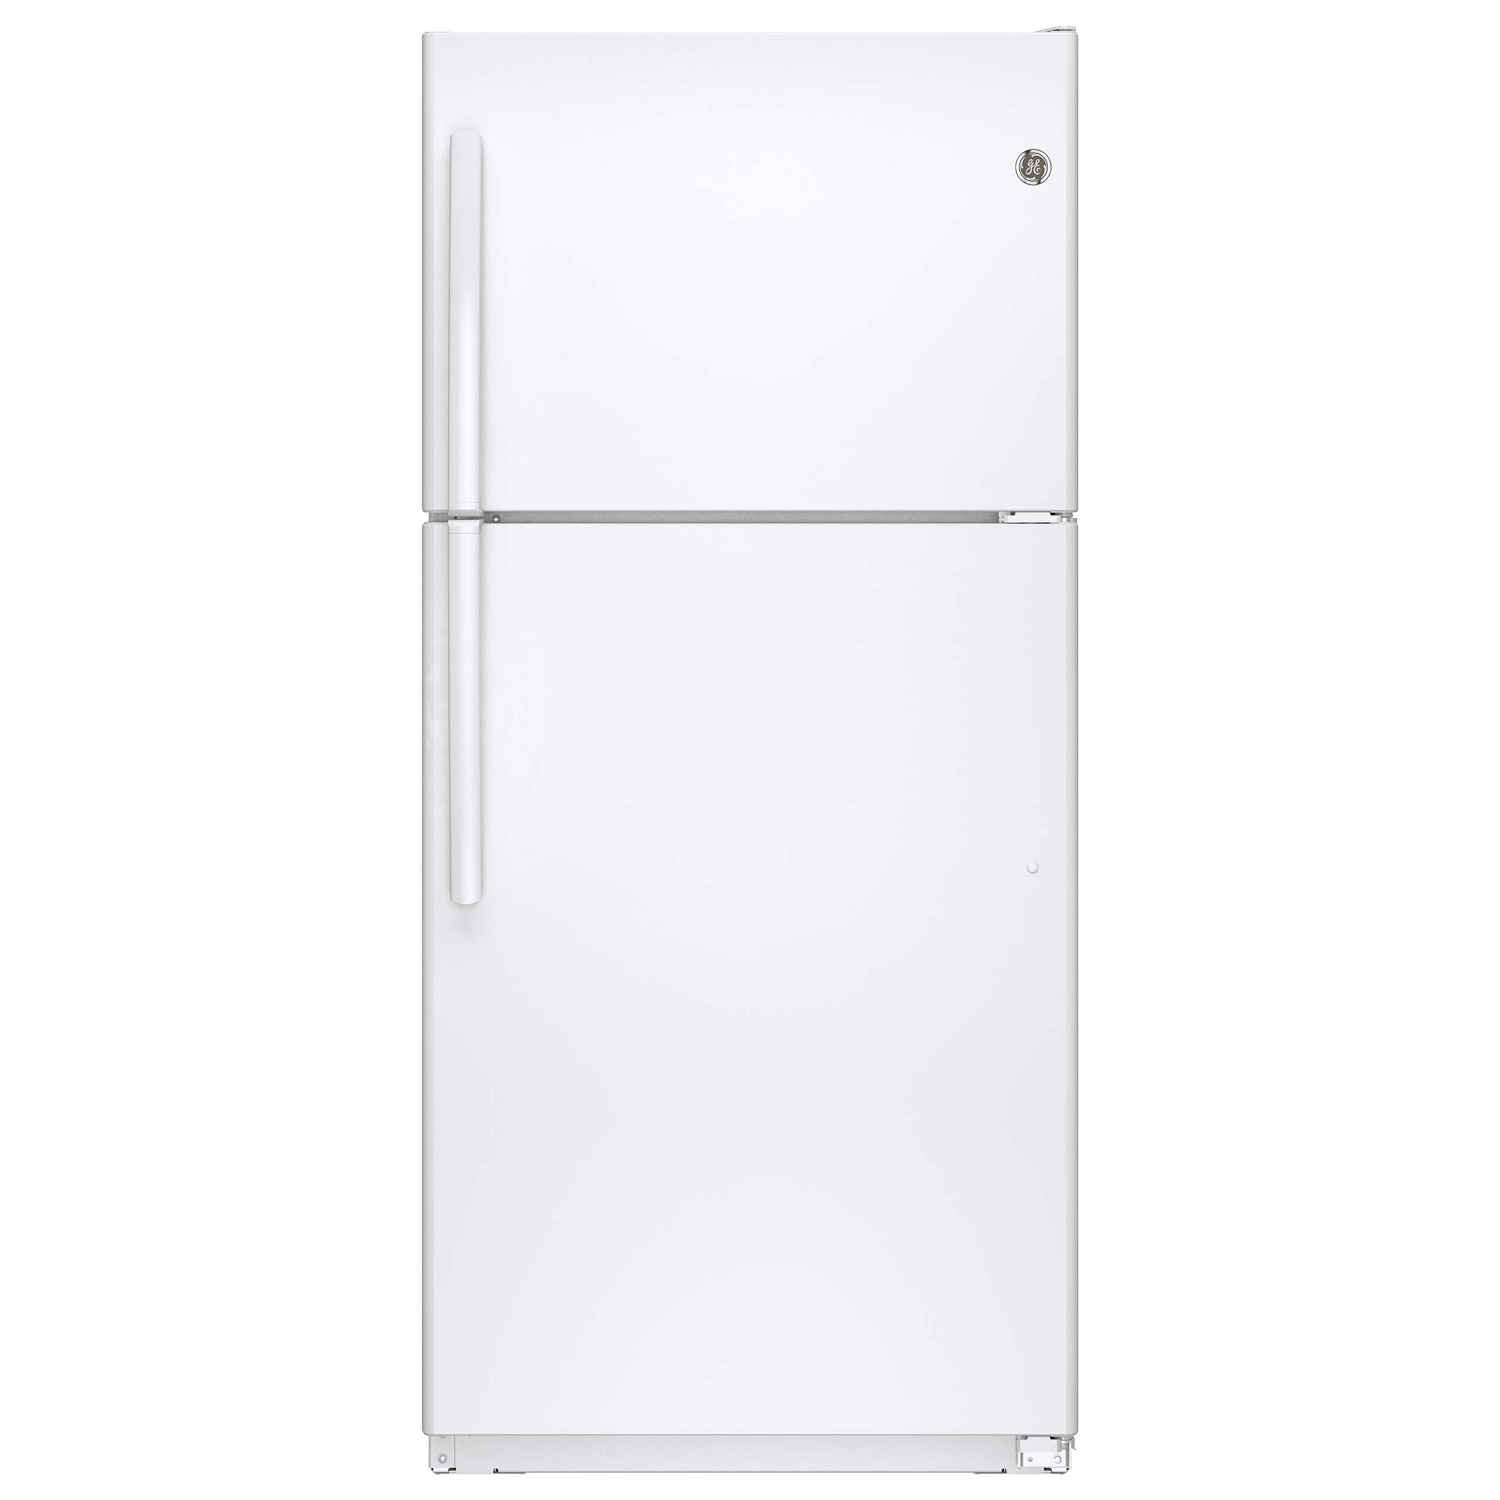 Buy GE Refrigerator GTE18ETHWW